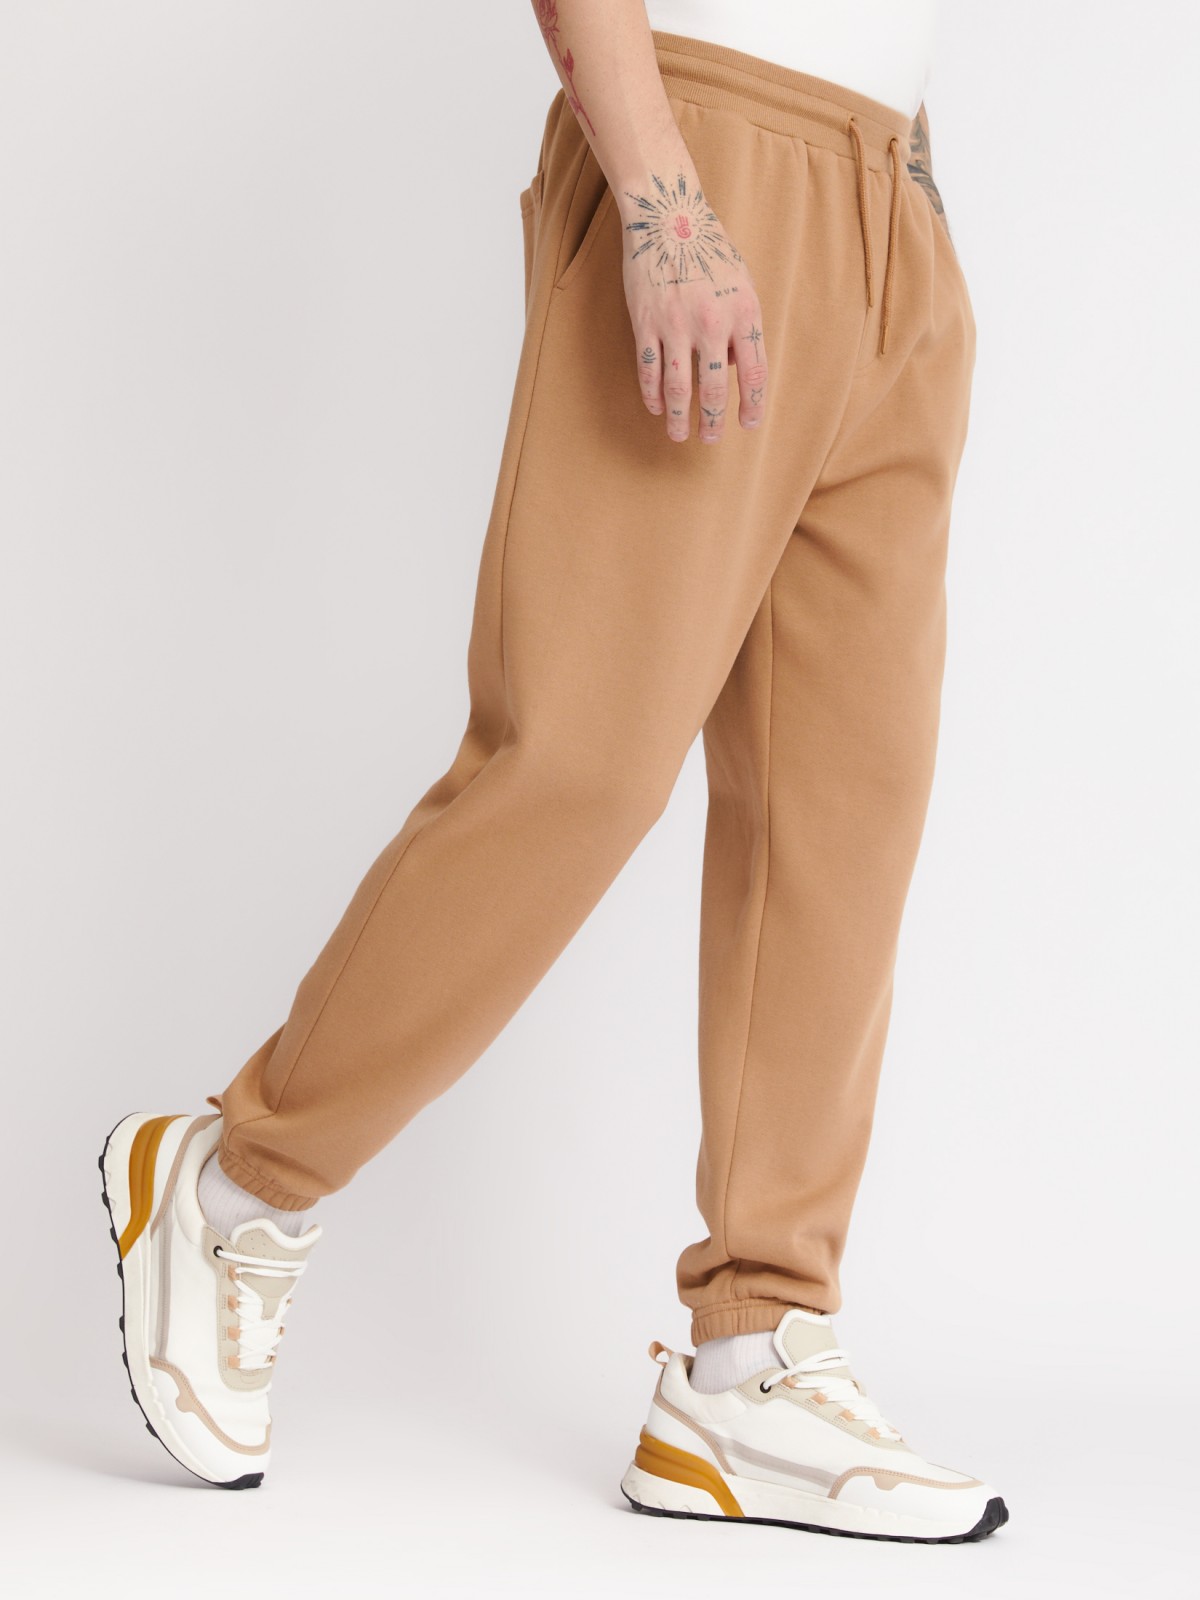 Утеплённые трикотажные брюки-джоггеры в спортивном стиле zolla 213327675022, цвет бежевый, размер XS - фото 3